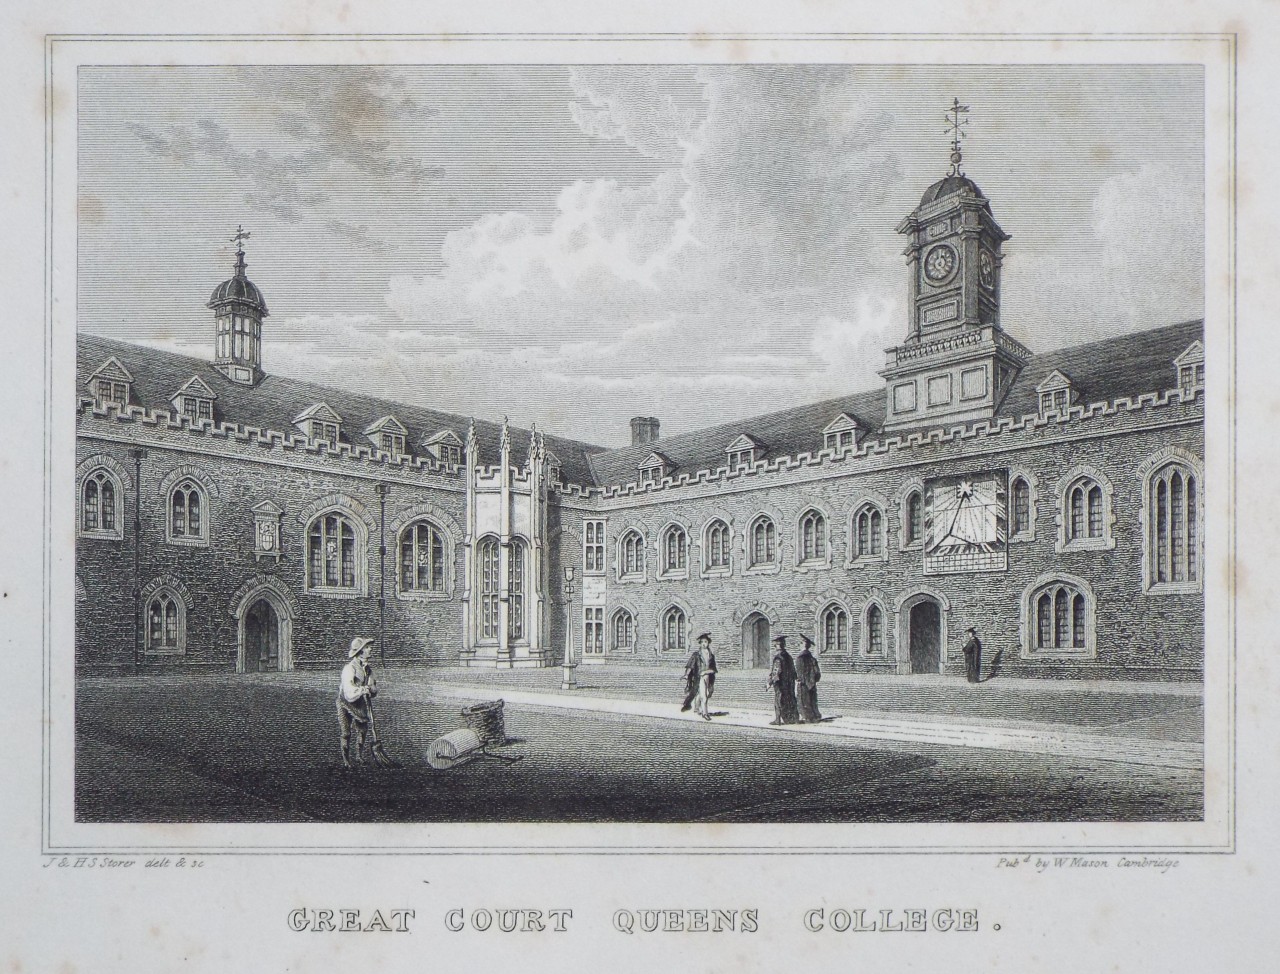 Print - Great Court Queens College. - Storer